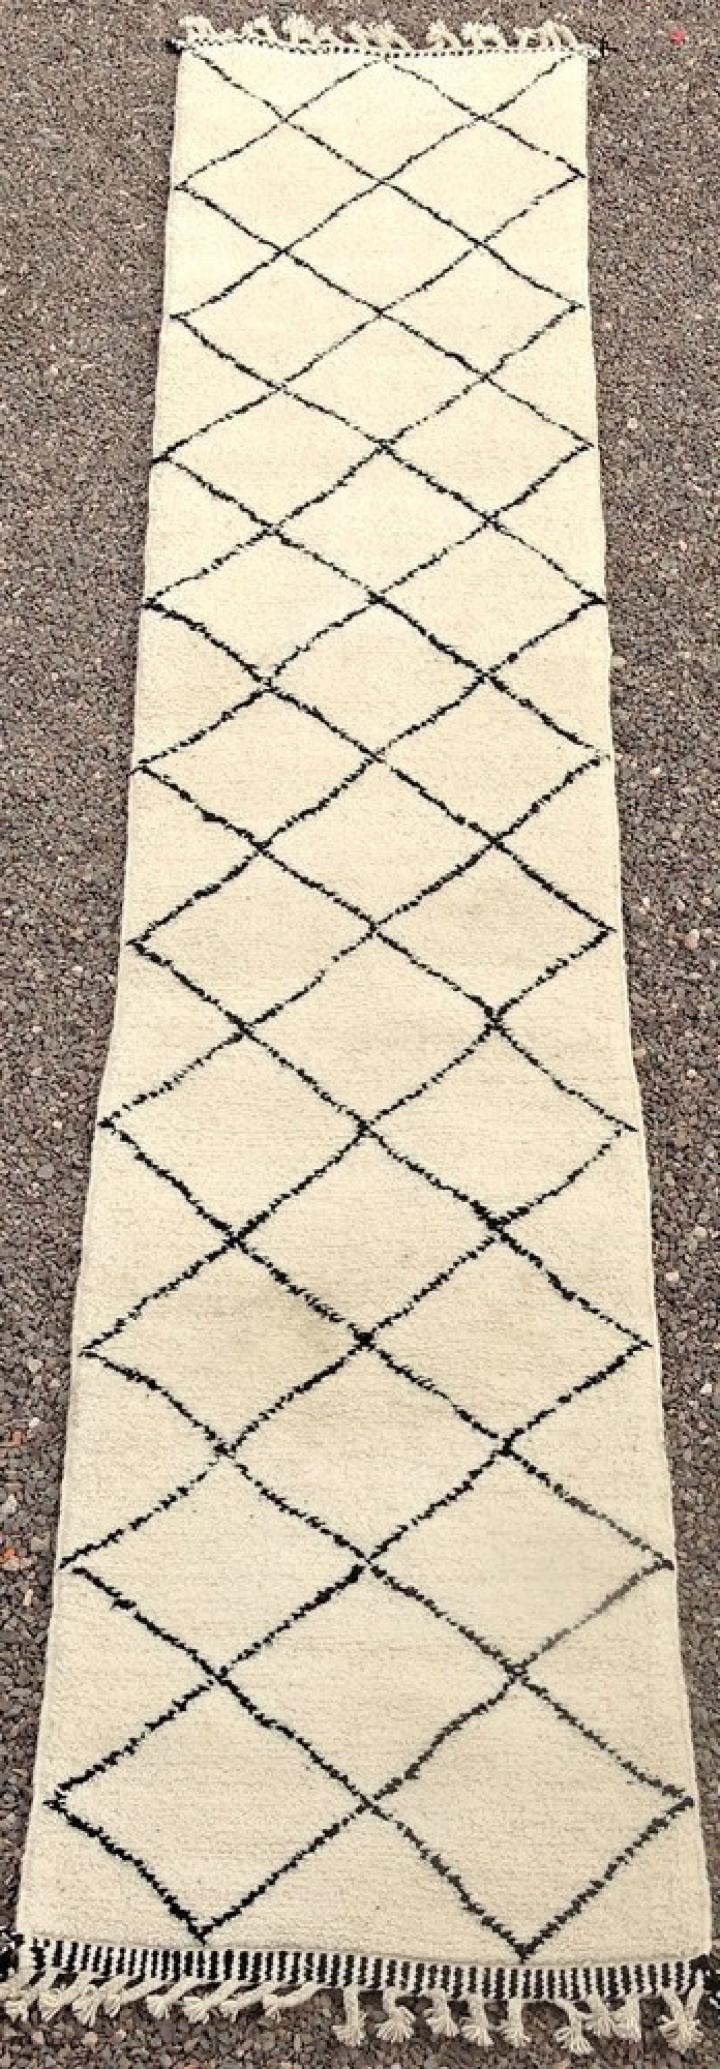 Berber tapijt #BO51122 van de categorie Beni ourain grote maten vloerkleden